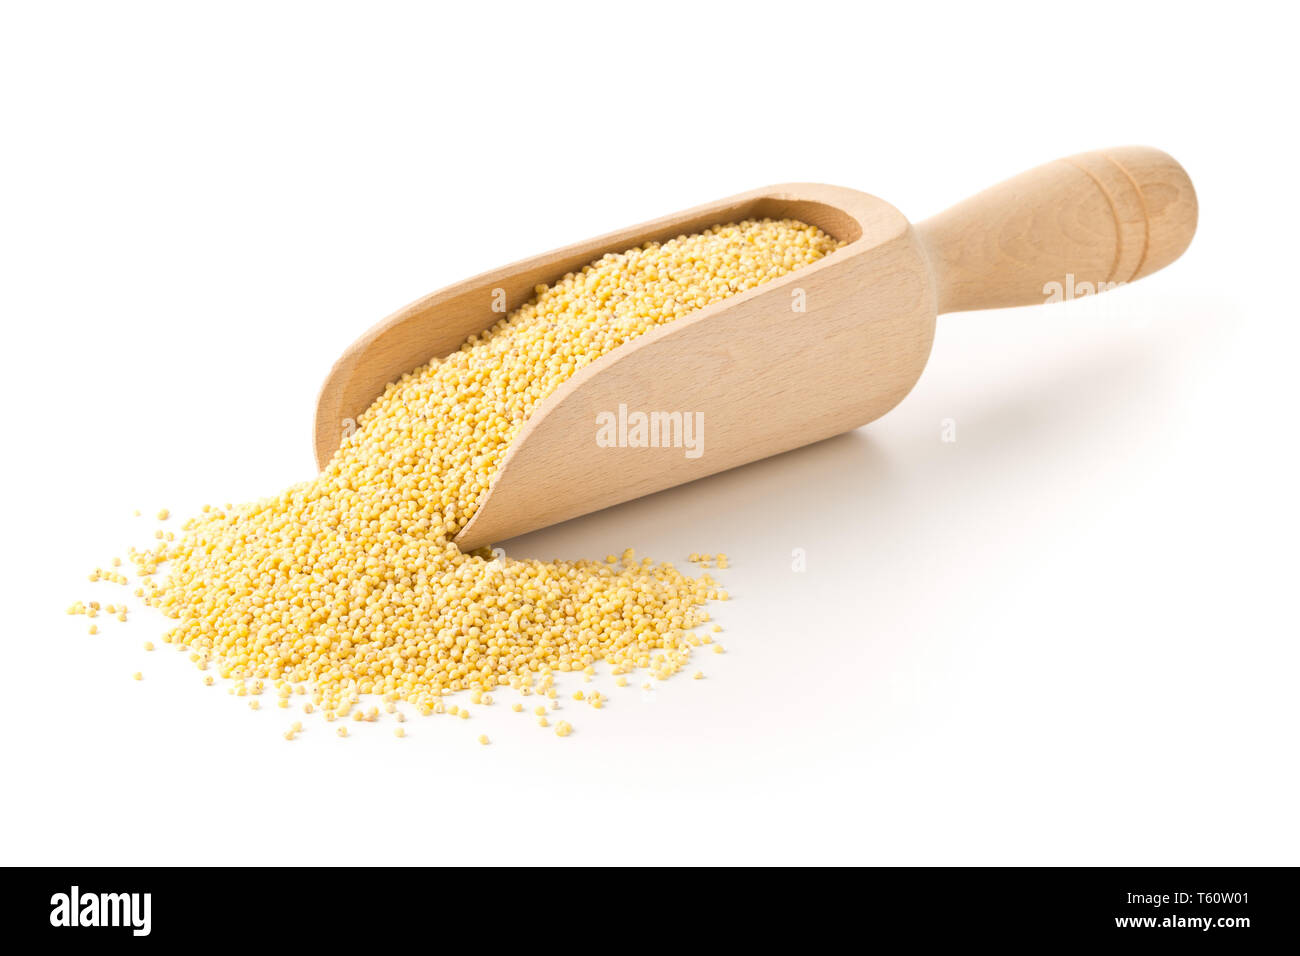 Pila di miglio dorato, un senza glutine di sementi di grano, nel convogliatore di legno su sfondo bianco Foto Stock